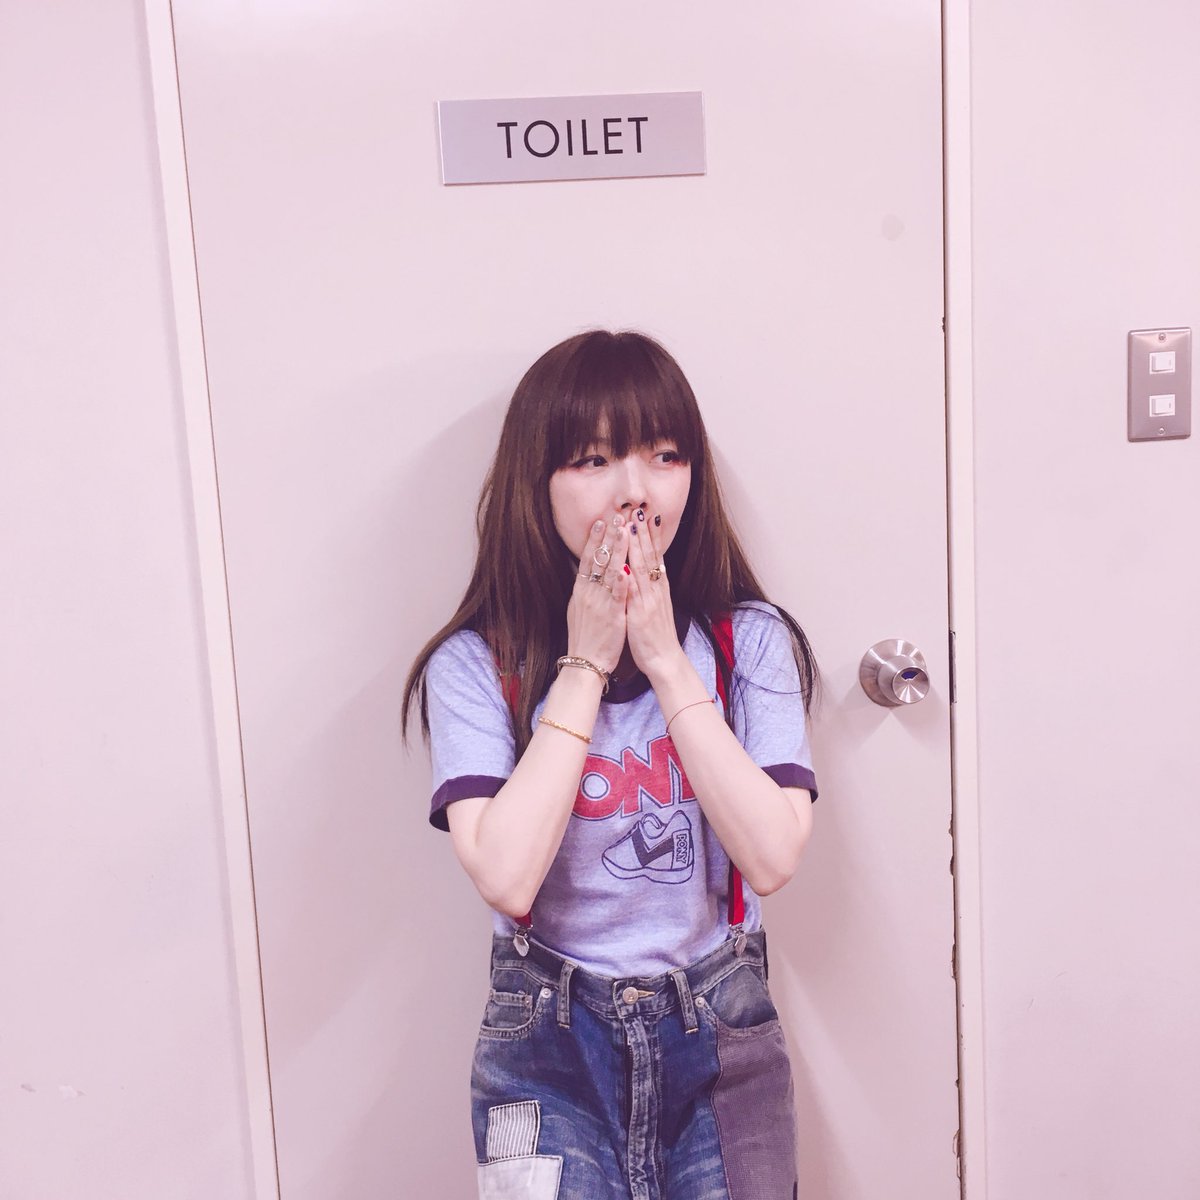 Aiko Official 宇都宮ライブ1日目終わりました 歌うのが本当に楽しかった そんな場所を作ってくれたのはみんなです 本当にありがとうございましたー 写真は今日のmcにちなんで楽屋のトイレね ほんまにありがとう